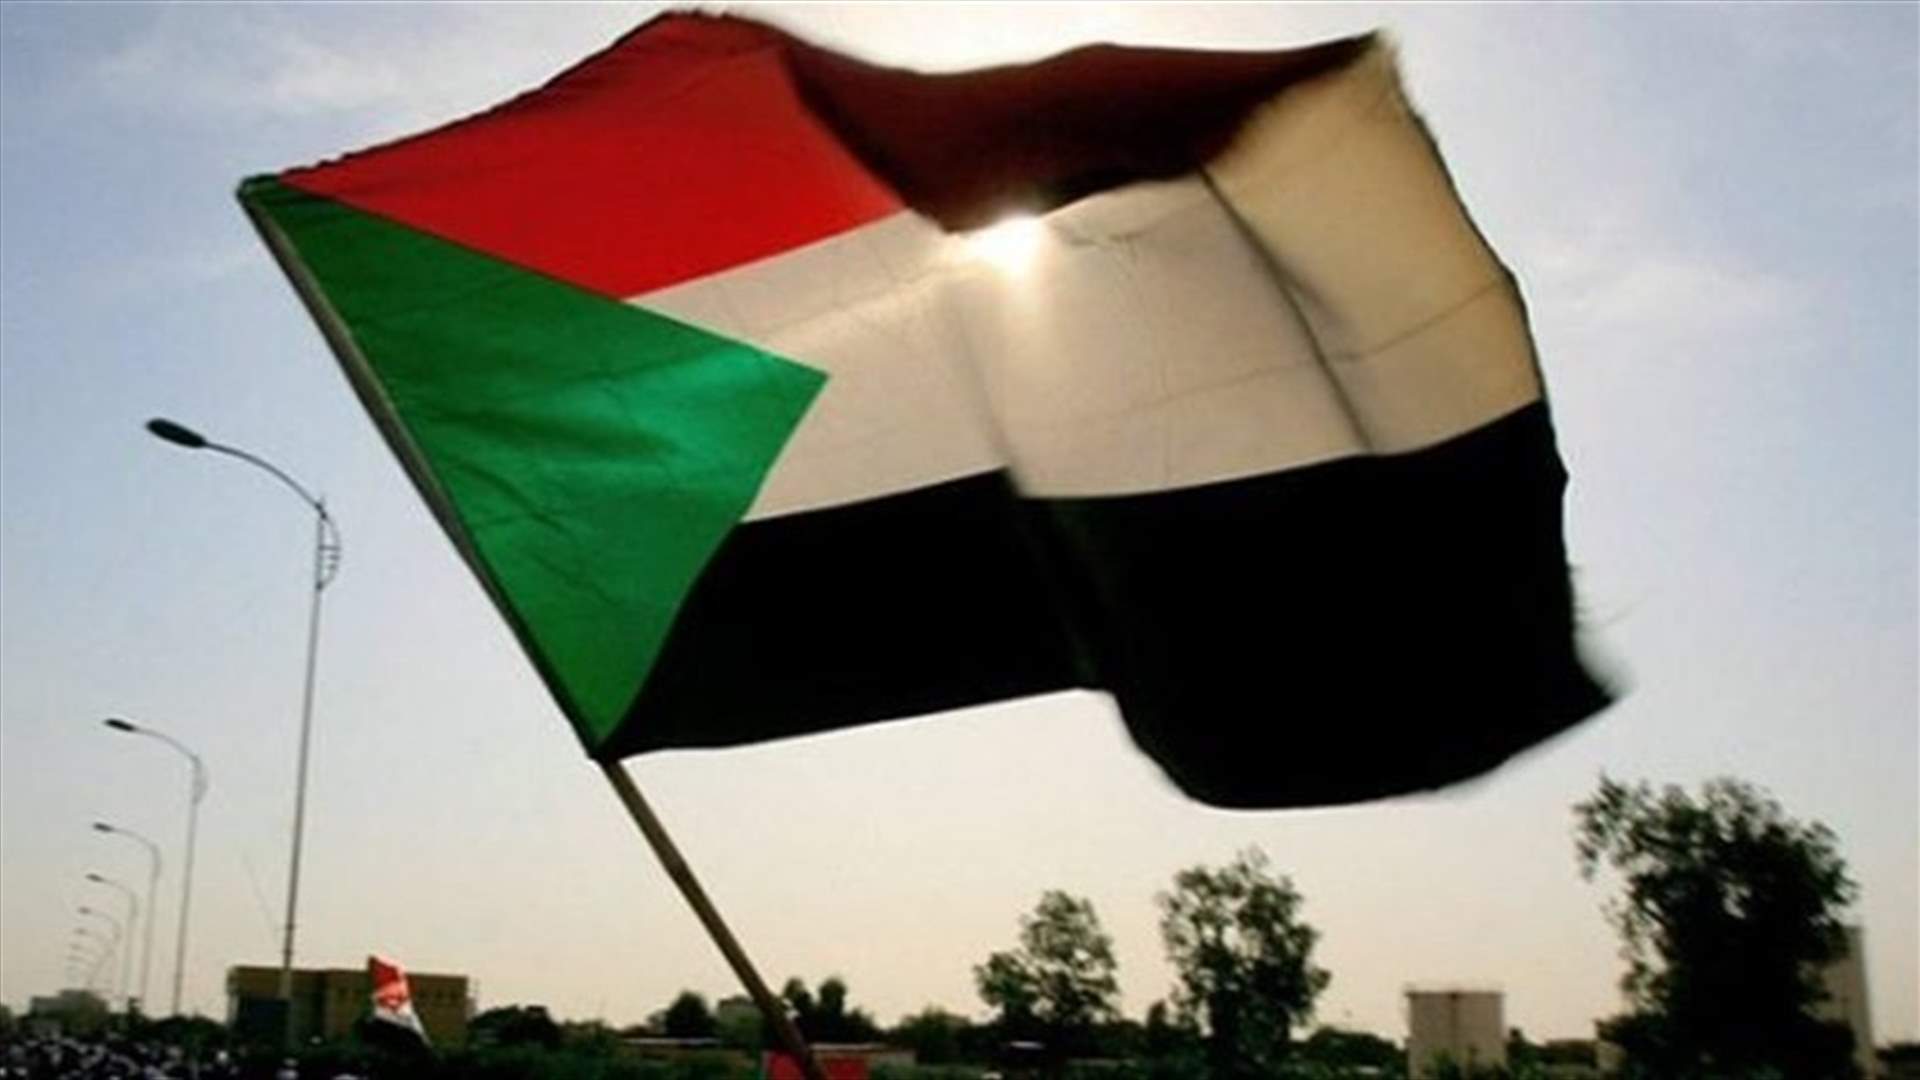 احتجاجات مؤيدة للجيش في السودان مع تفاقم الأزمة السياسية